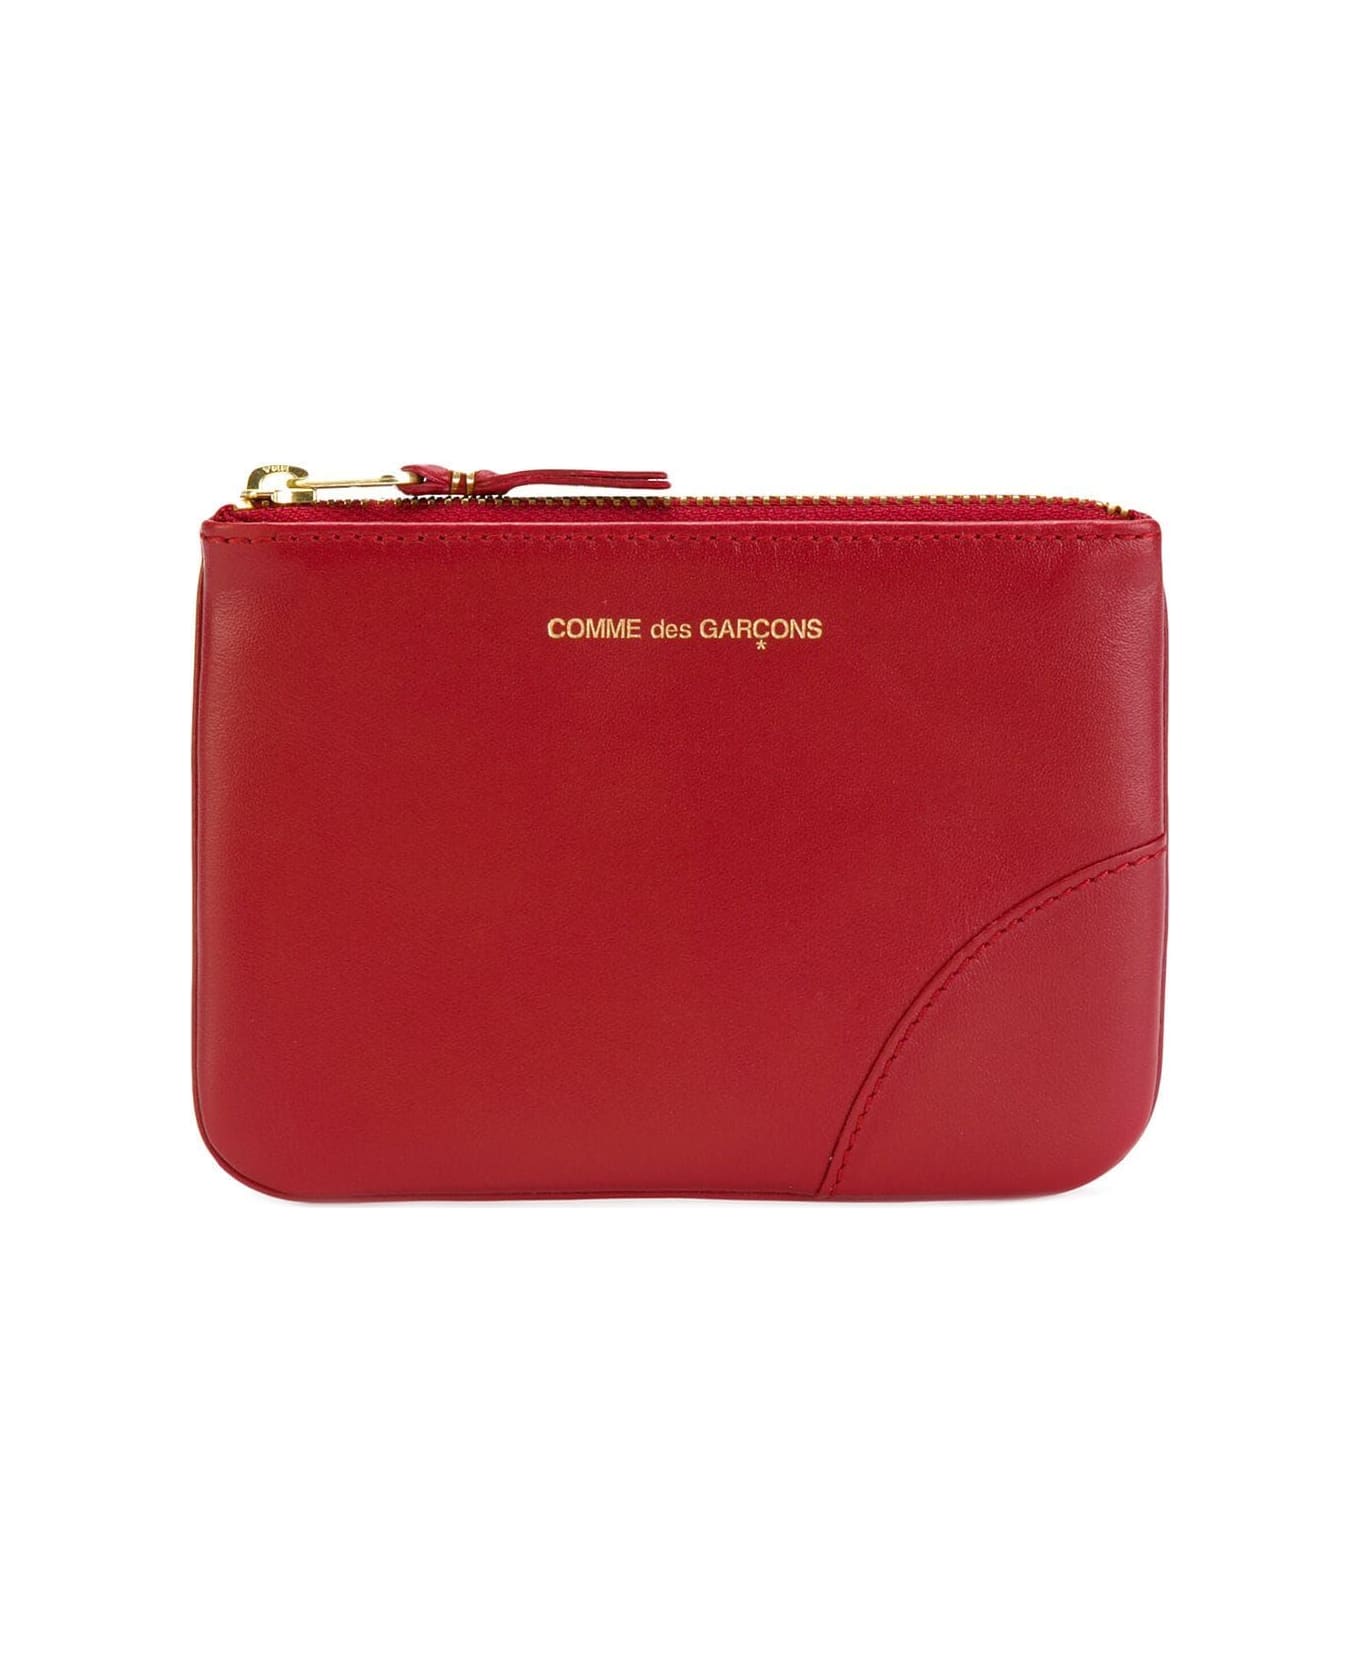 Comme des Garçons Wallet Classic Line Wallet - Red 財布